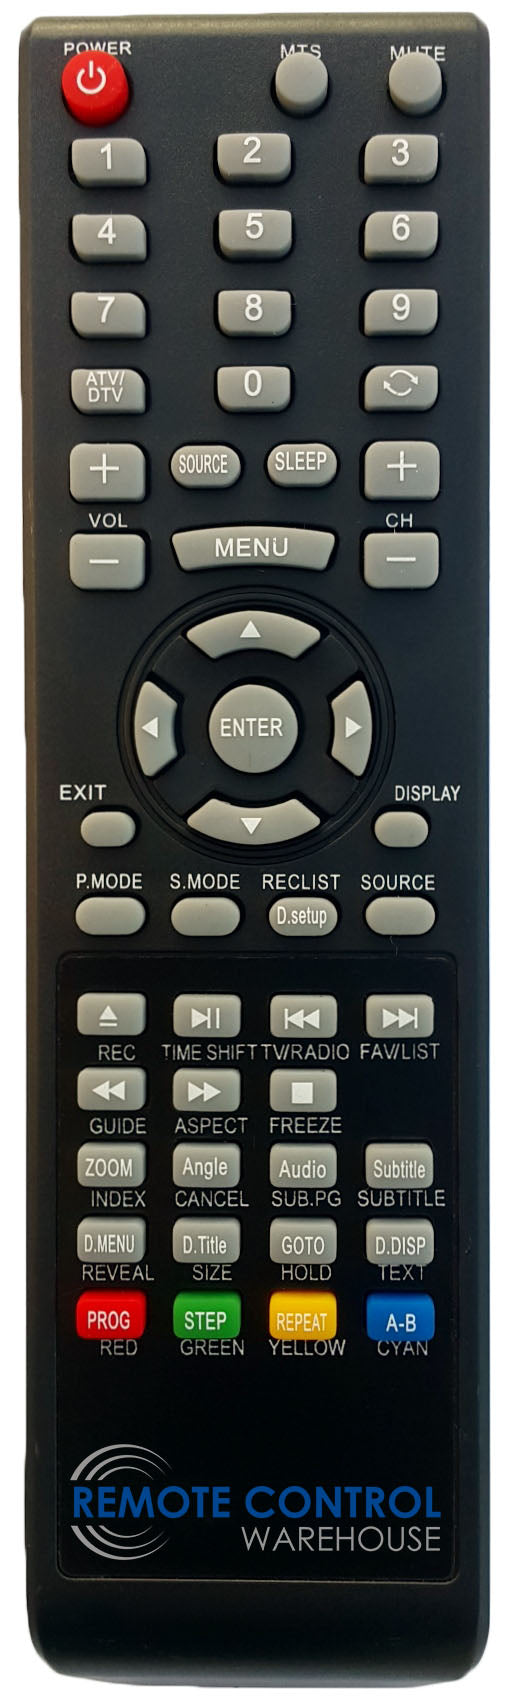 REPLACEMENT SONIQ REMOTE CONTROL QT120 - L26V10A REVA  TV